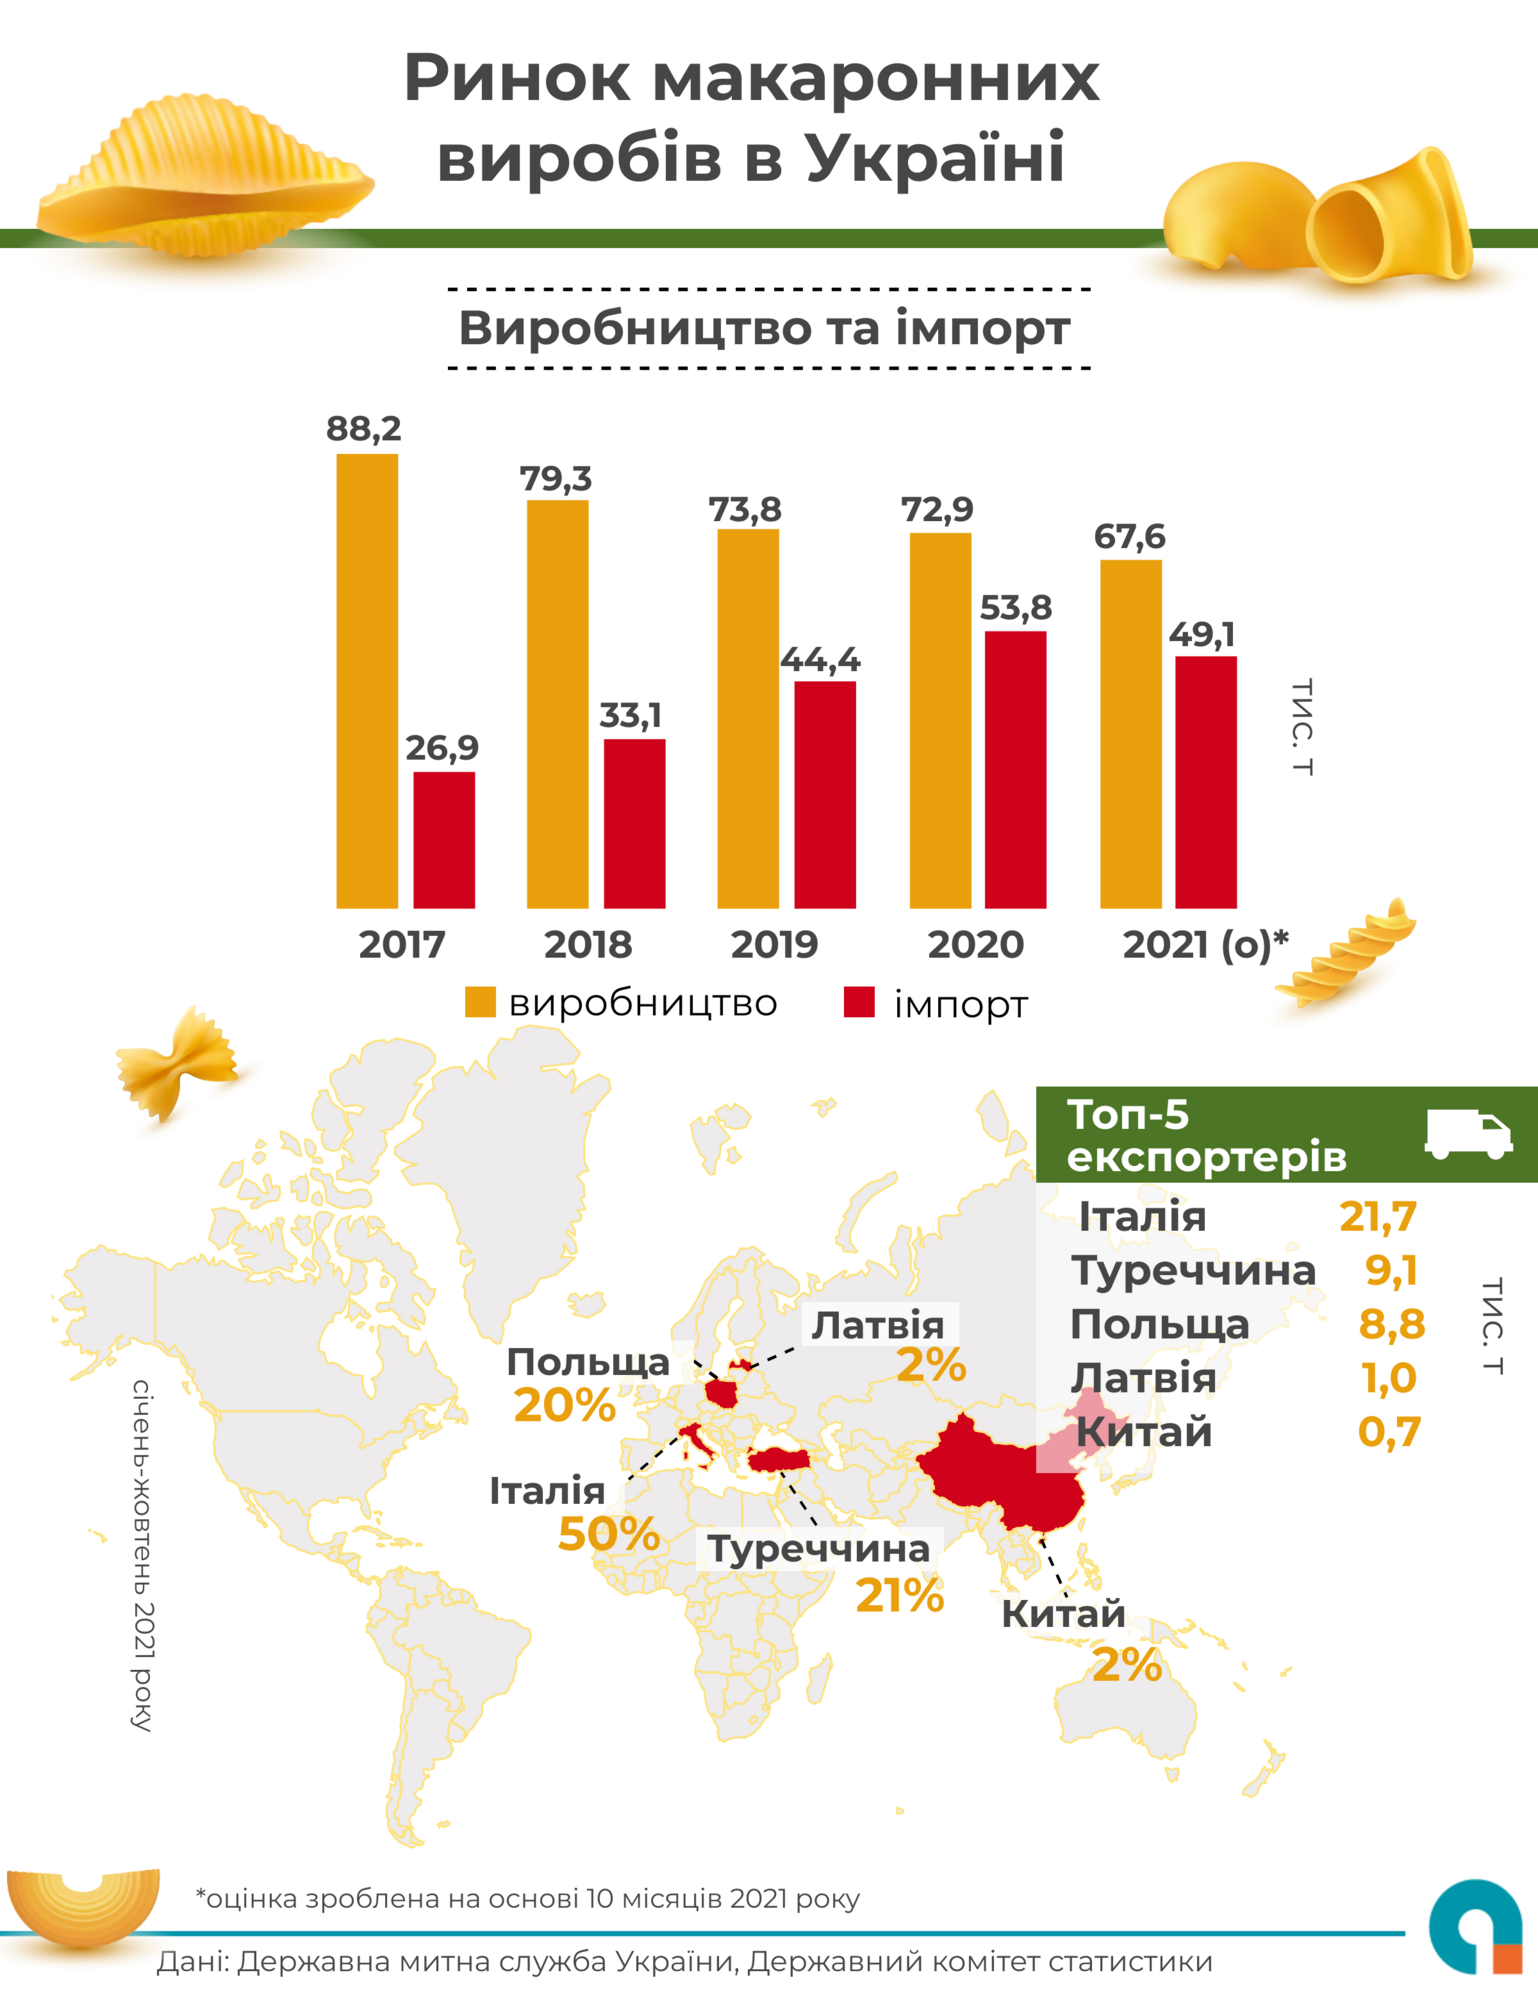 Як змінювався ринок макаронних виробів в Україні за останні 5 років